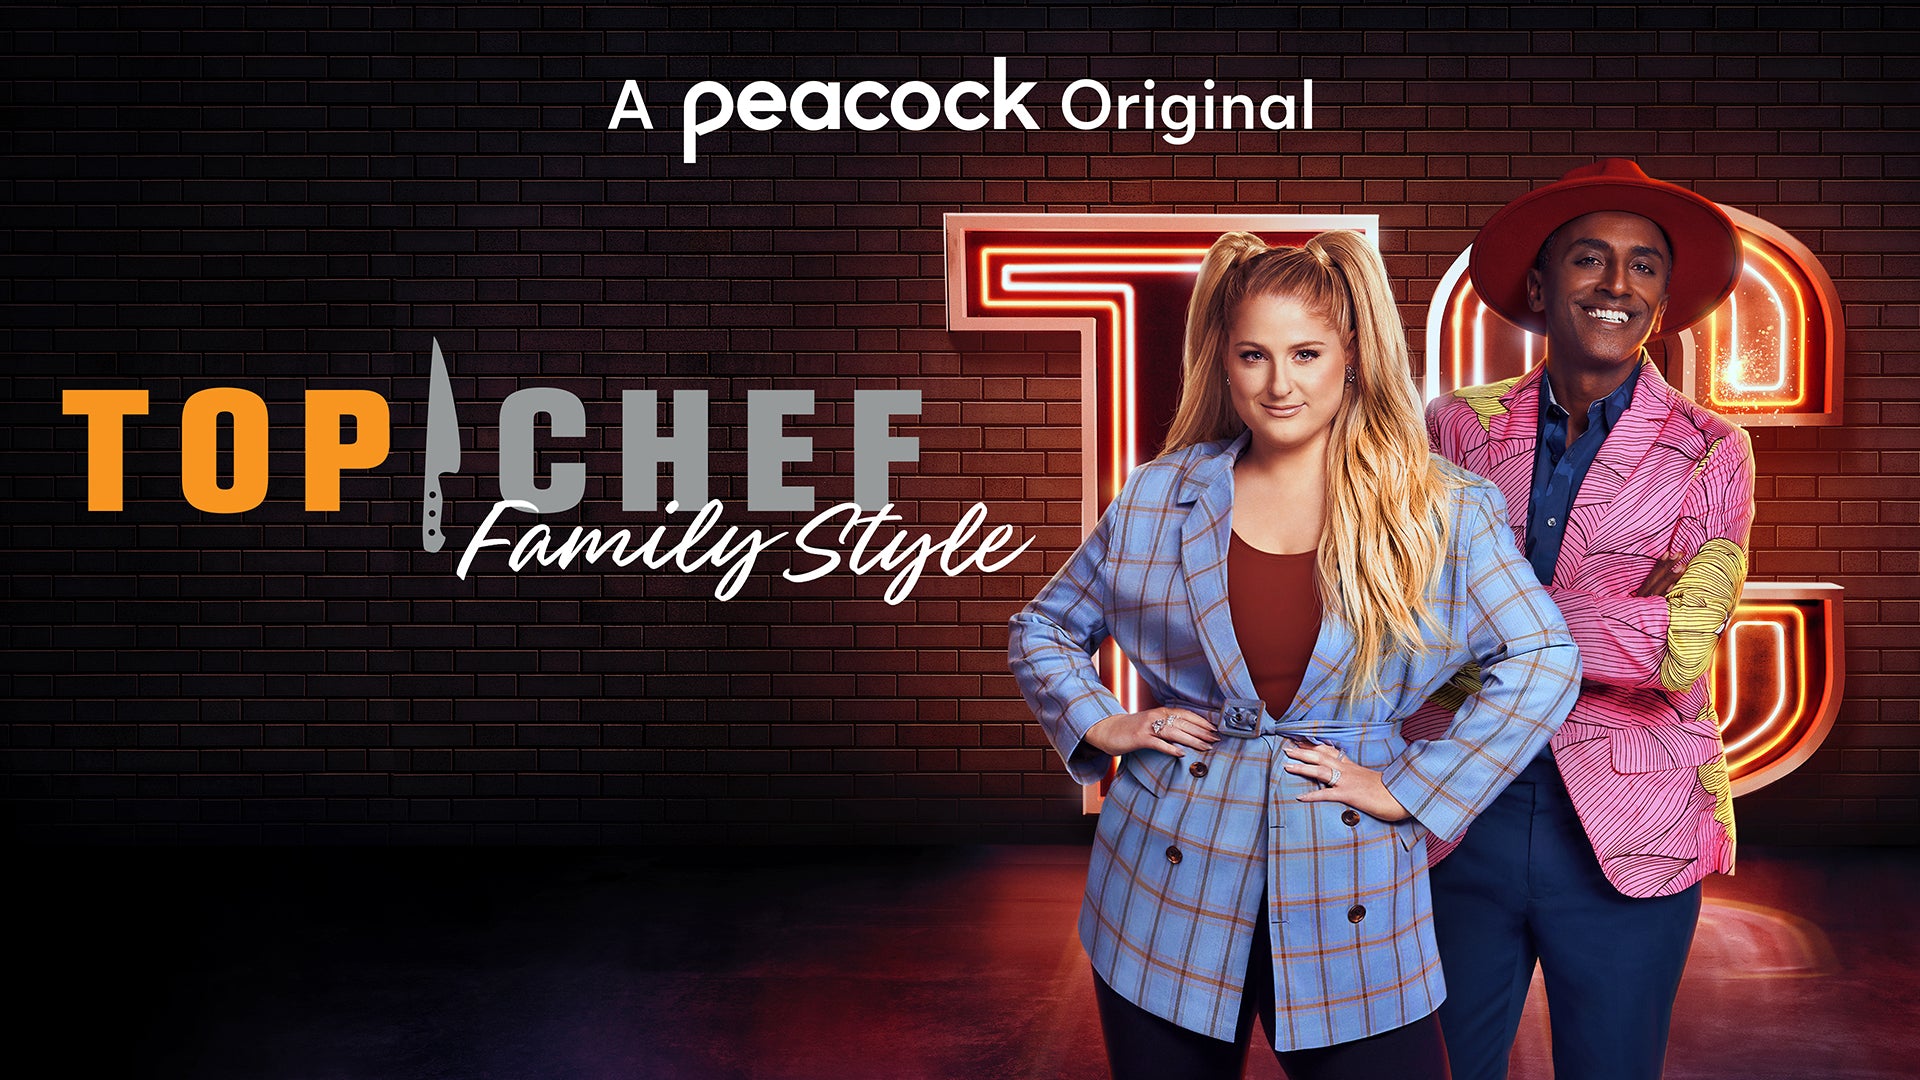 Top Chef Family Style llega a Universal+ para sorprender a los amantes de la gastronomía con Meghan Trainor y Marcus Samuelsson como anfitriones